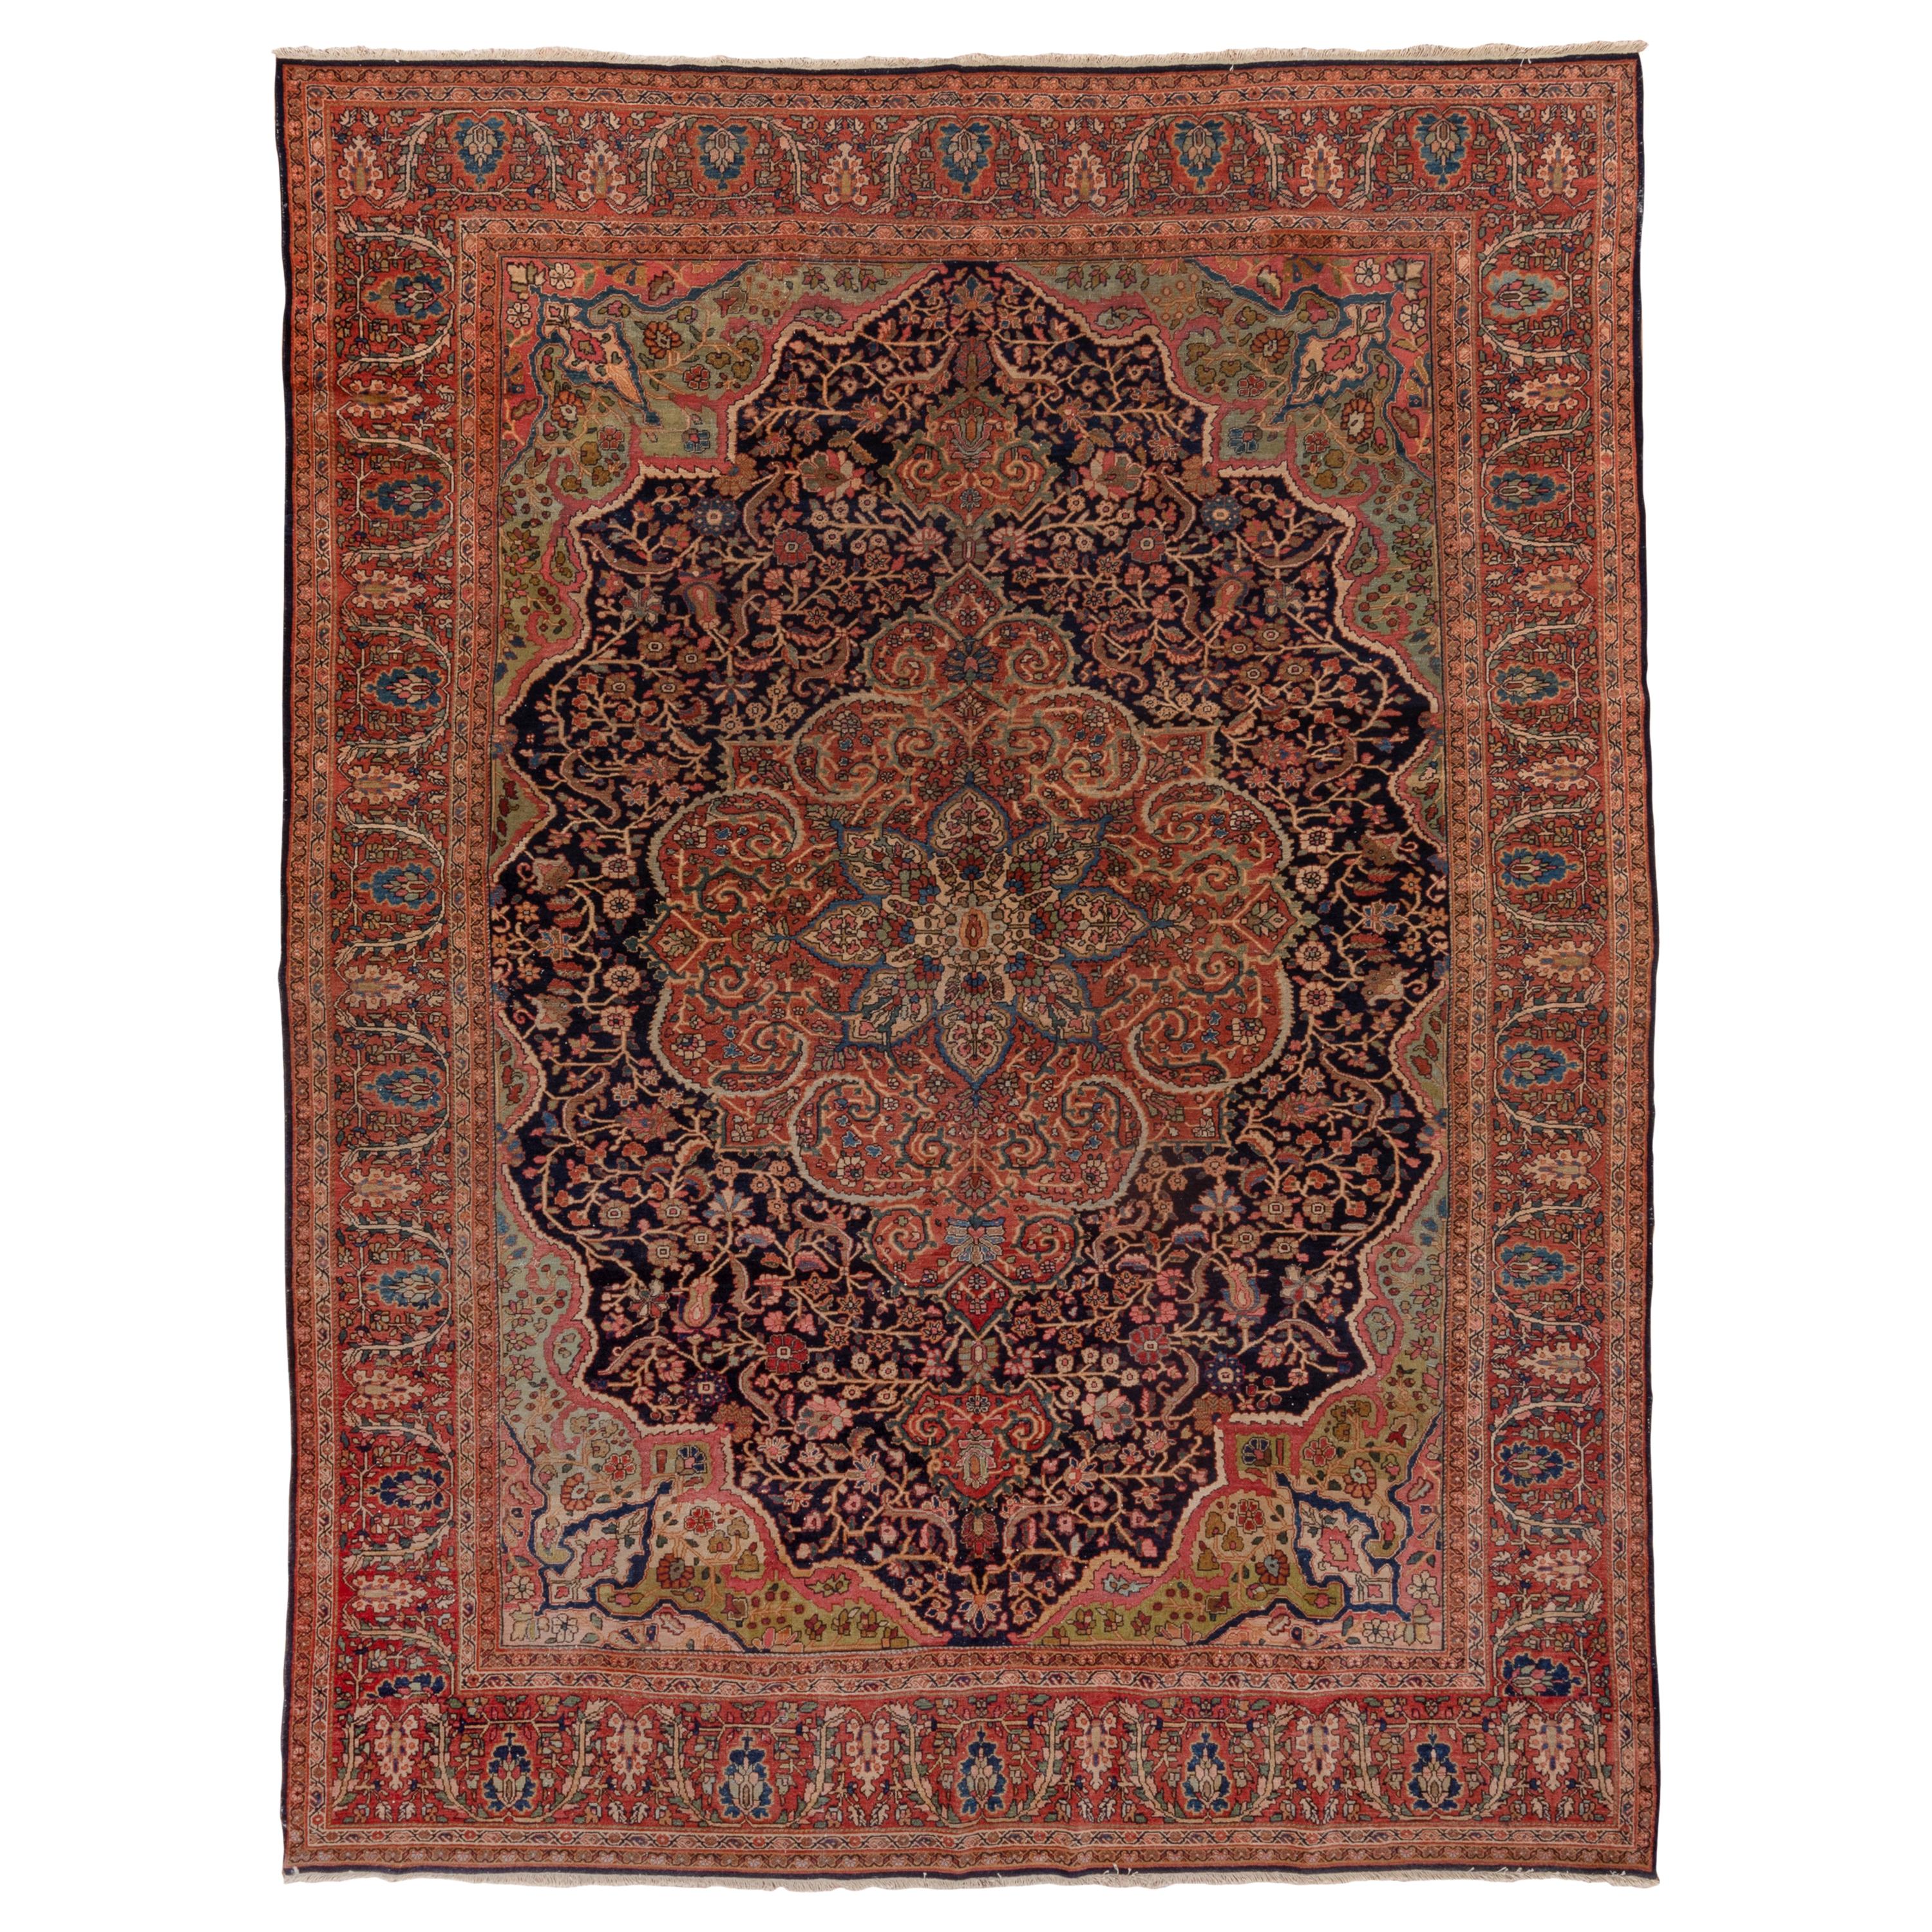 Antique Colorful Persian Sarouk Farahan Carpet, Colorful Palette